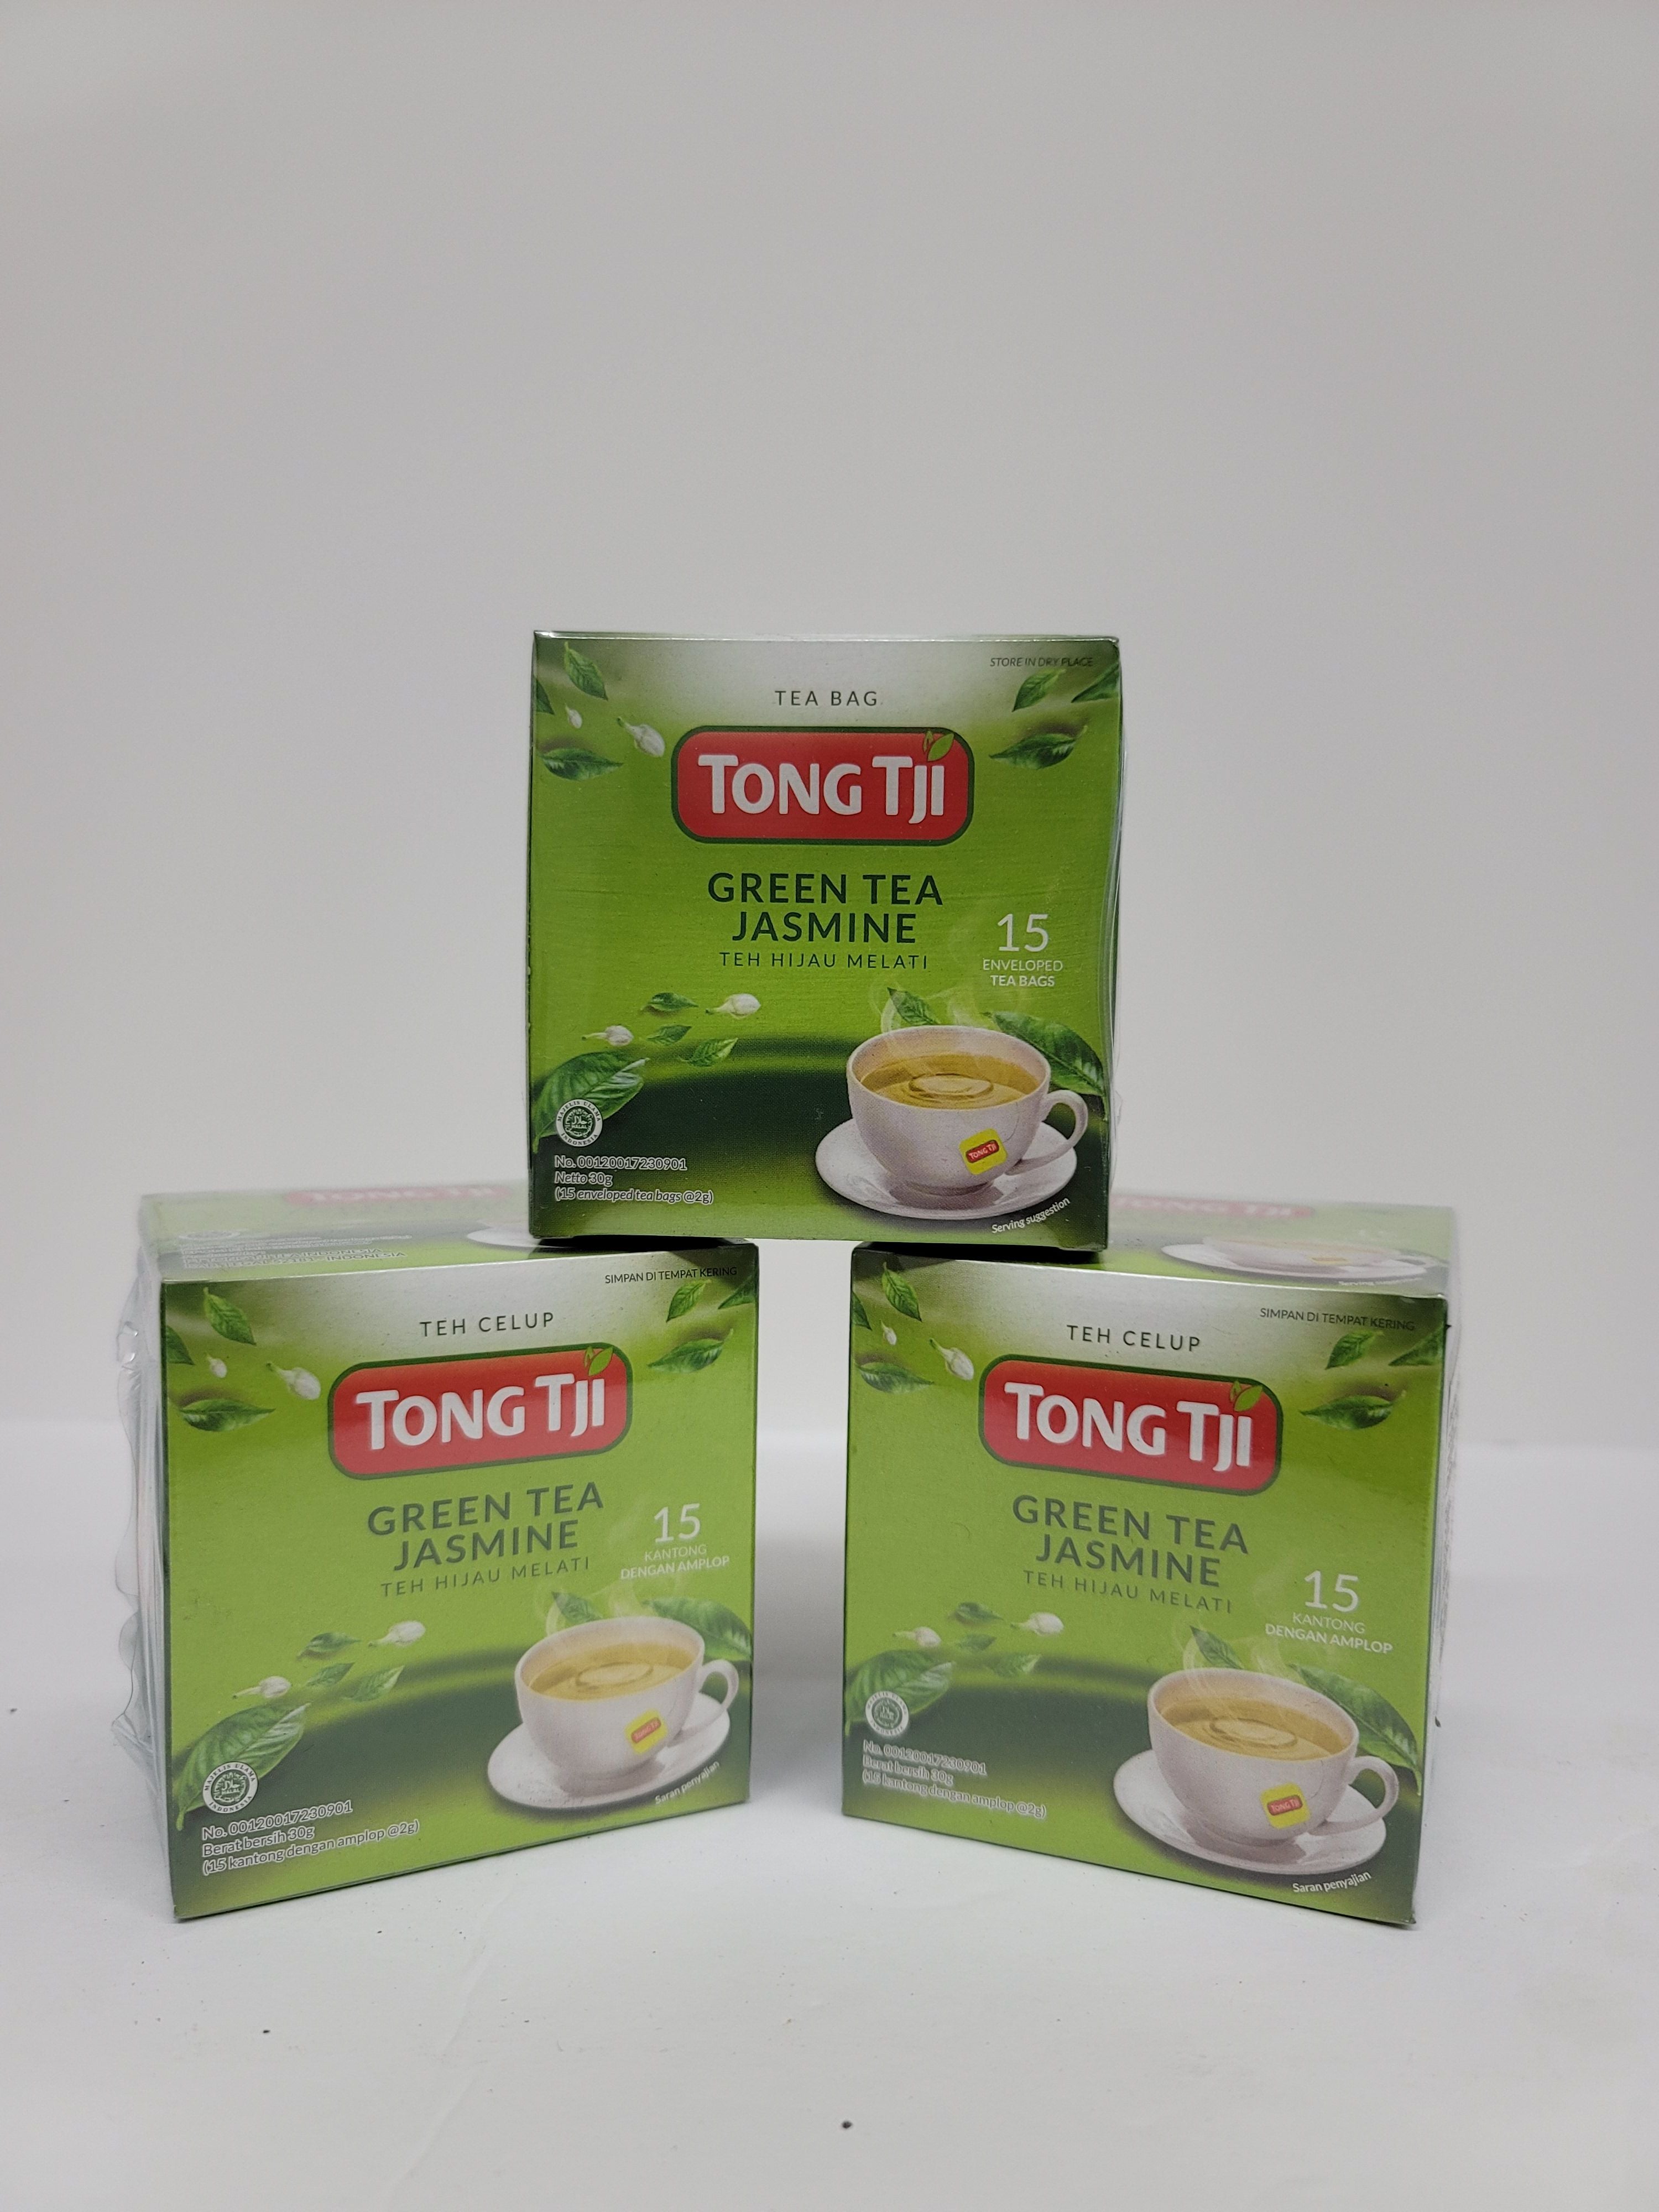 Tong Tji Jasmine Green Tea